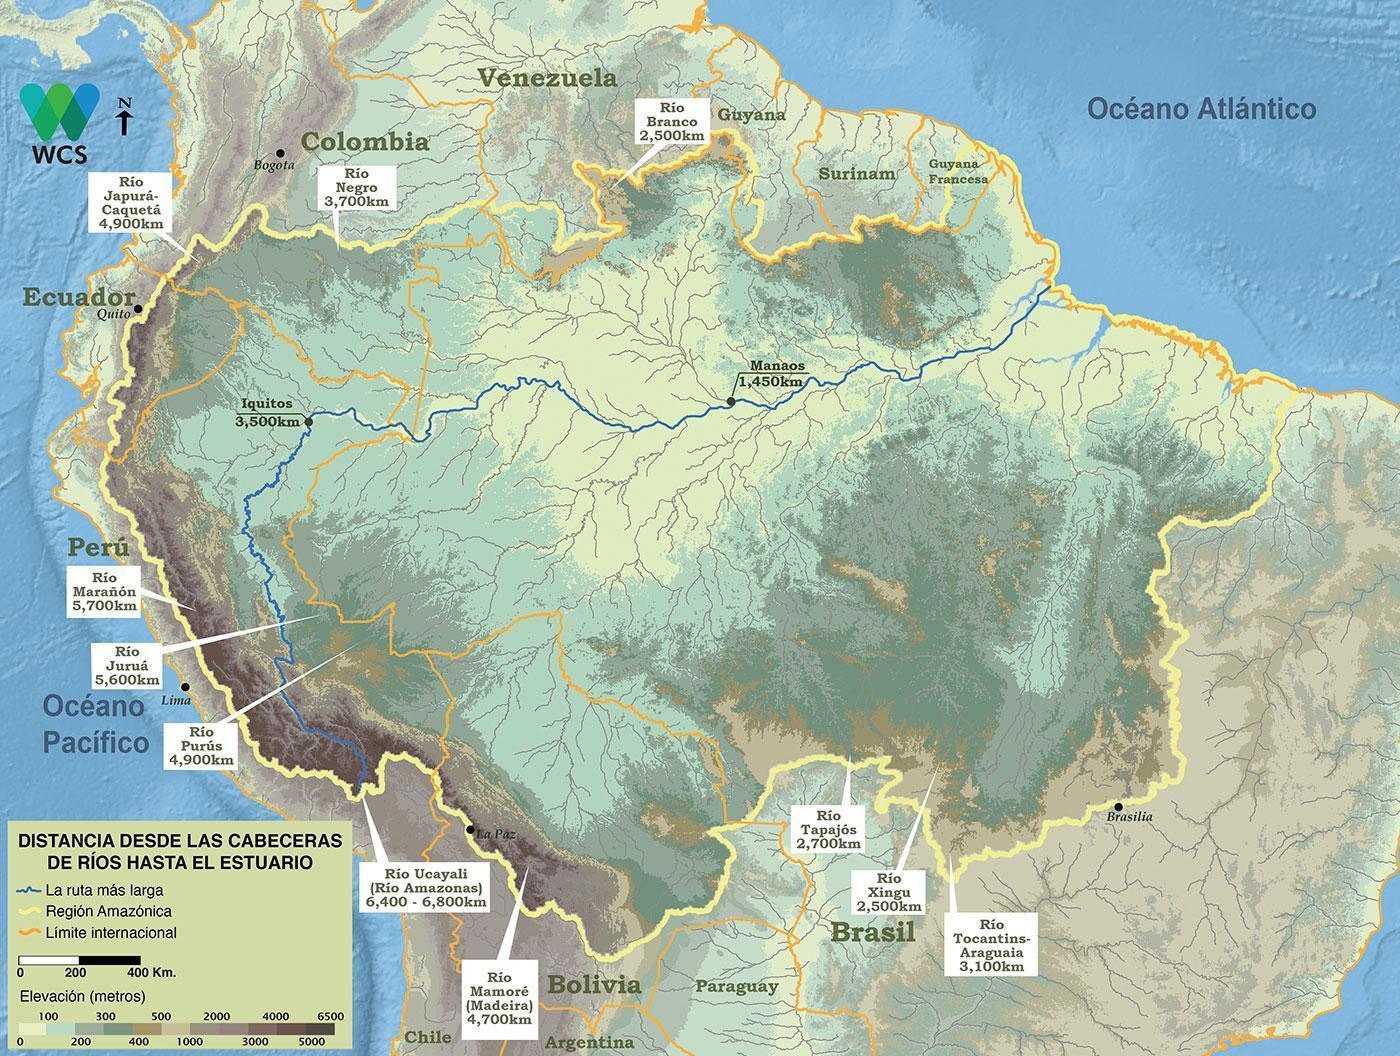 La cabecera del río Amazonas más distante se ubica a casi 6,800 kilómetros desde el Atlántico luego de considerar las distancias siguiendo el curso sinuoso de los grandes canales y tributarios